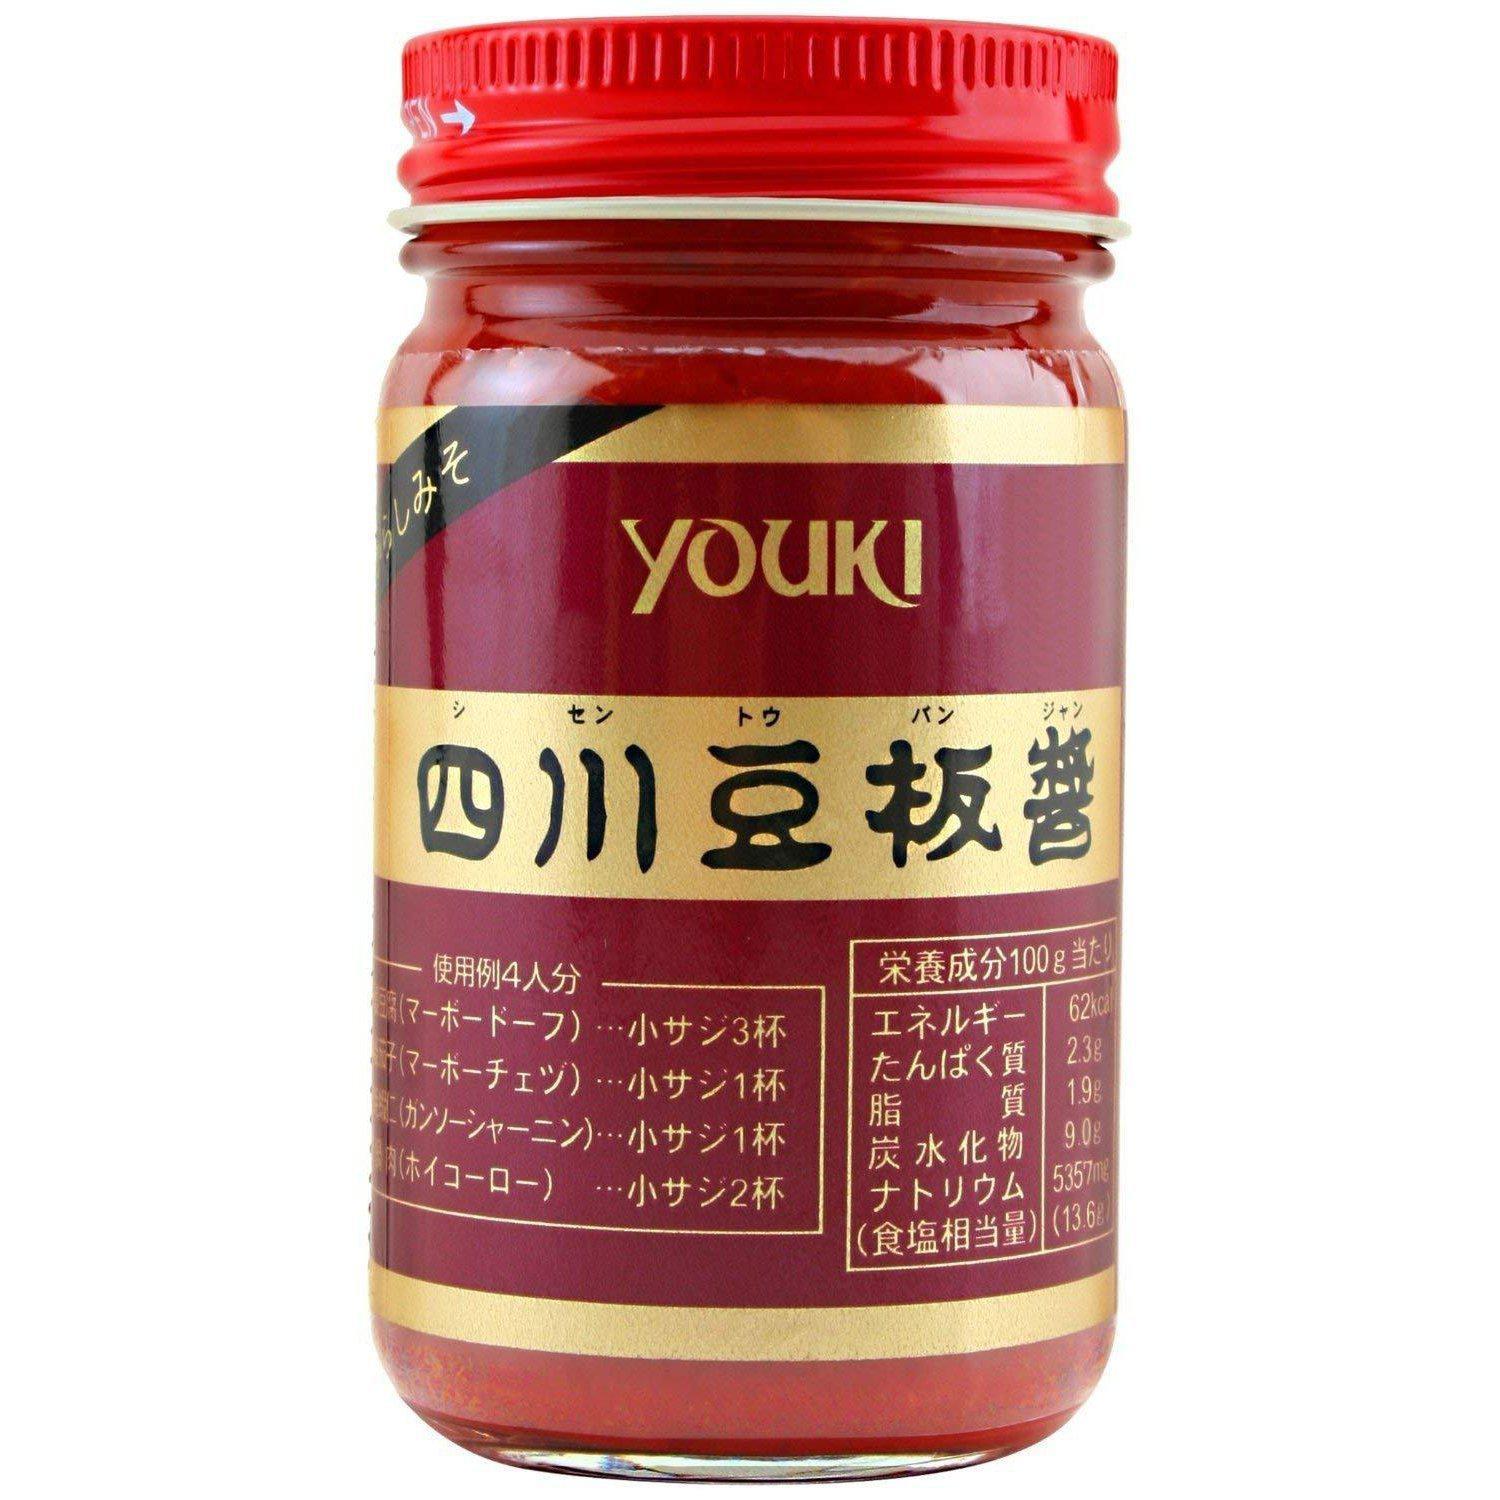 Youki Sichuan Doubanjiang Hot Chili Bean Sauce 130g